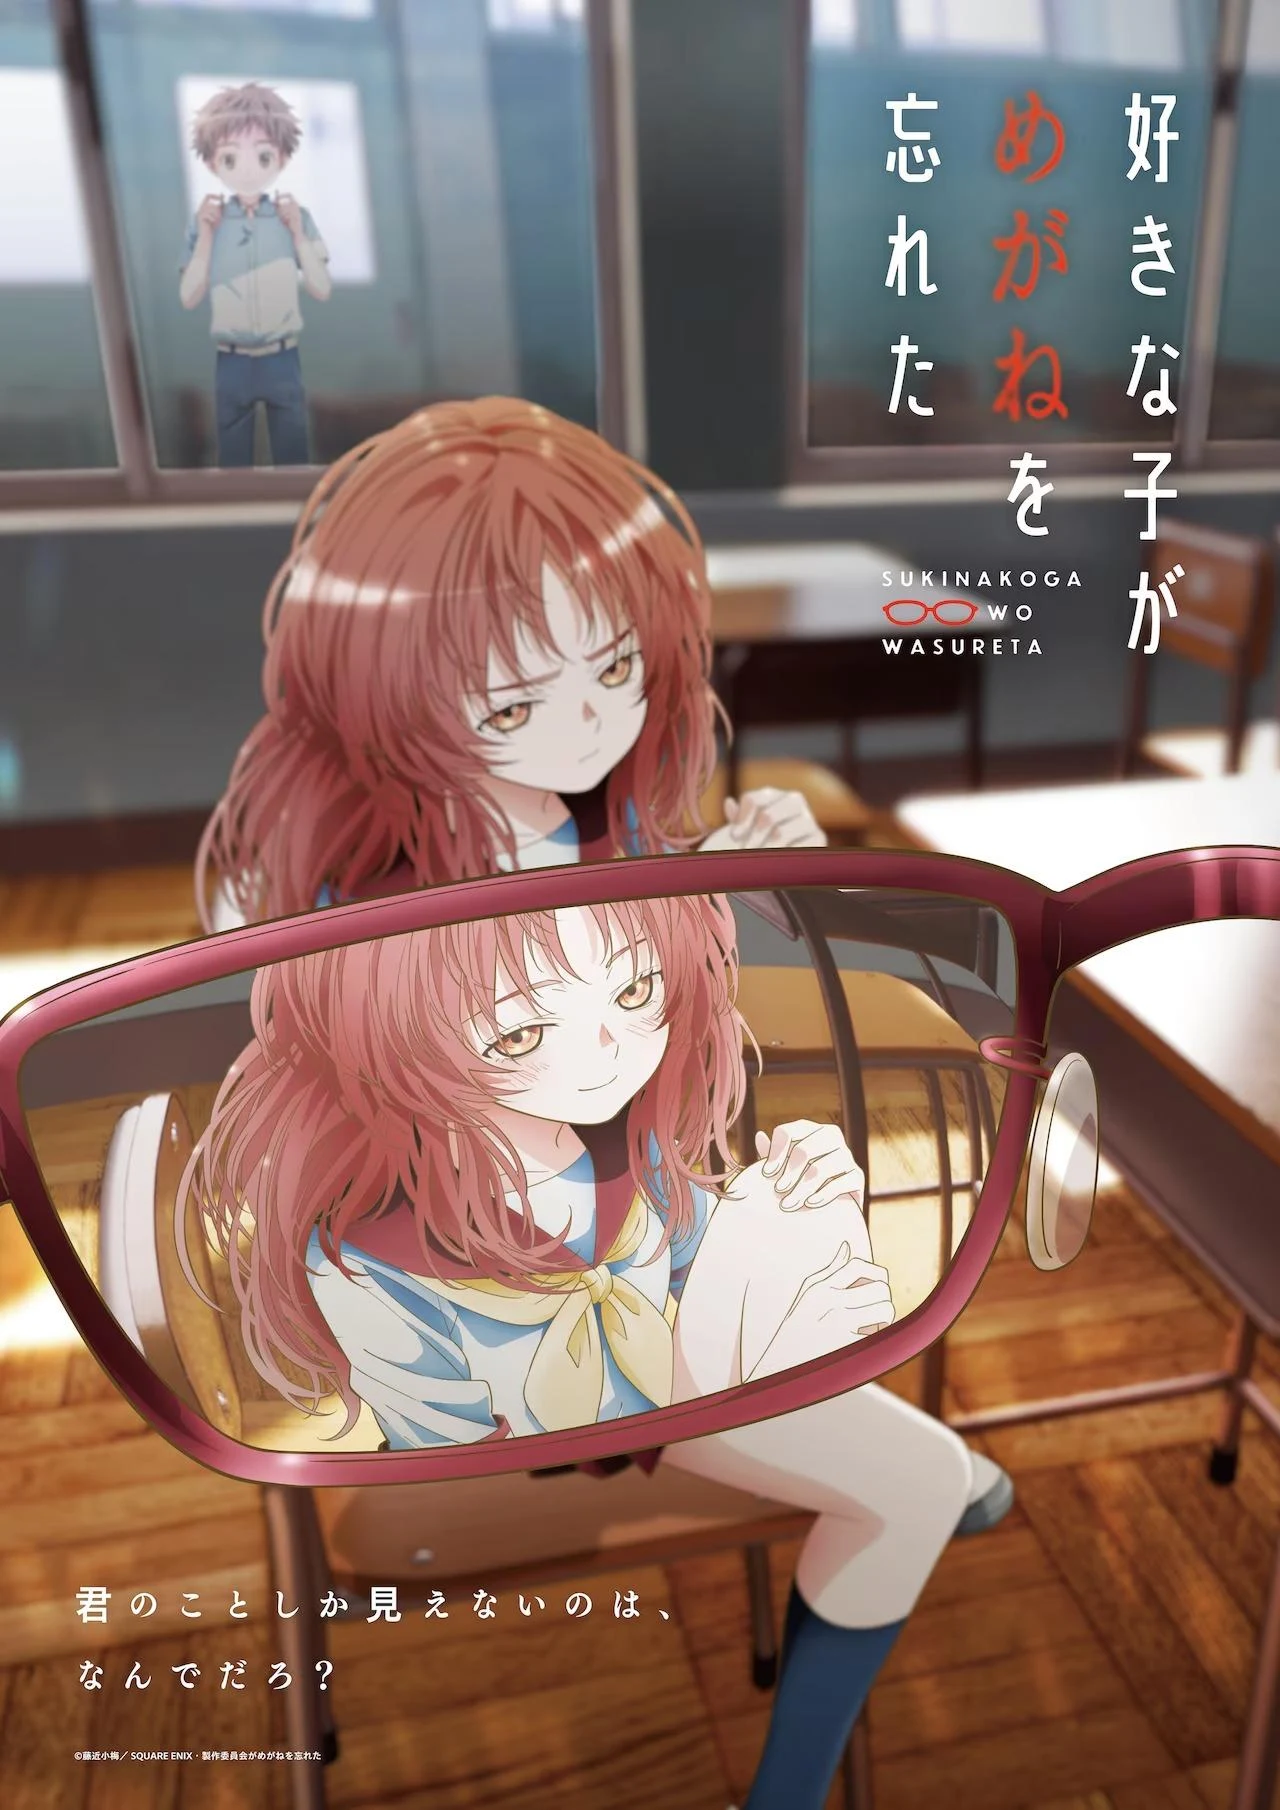 O anime Suki na Ko ga Megane wo Wasureta divulgou seu segundo trailer